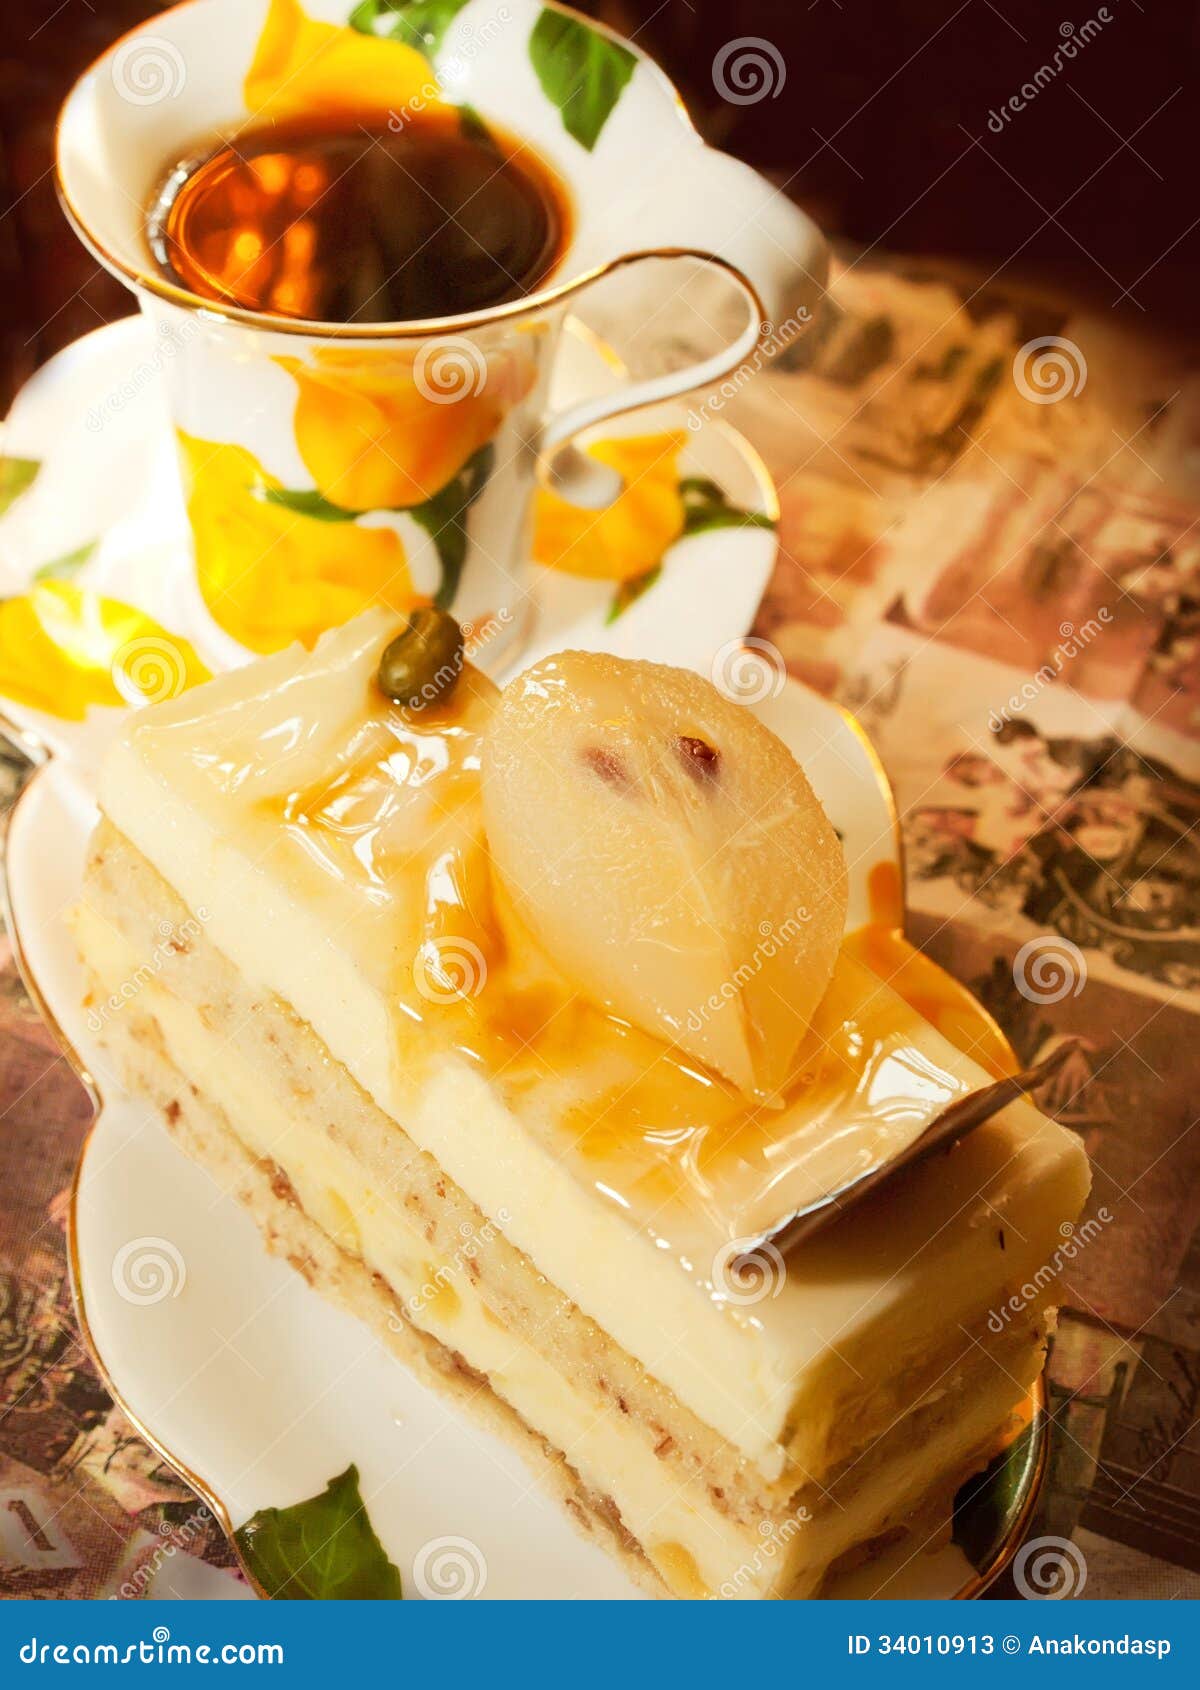 private citrus: 士多啤梨蛋糕 strawberry cream cake